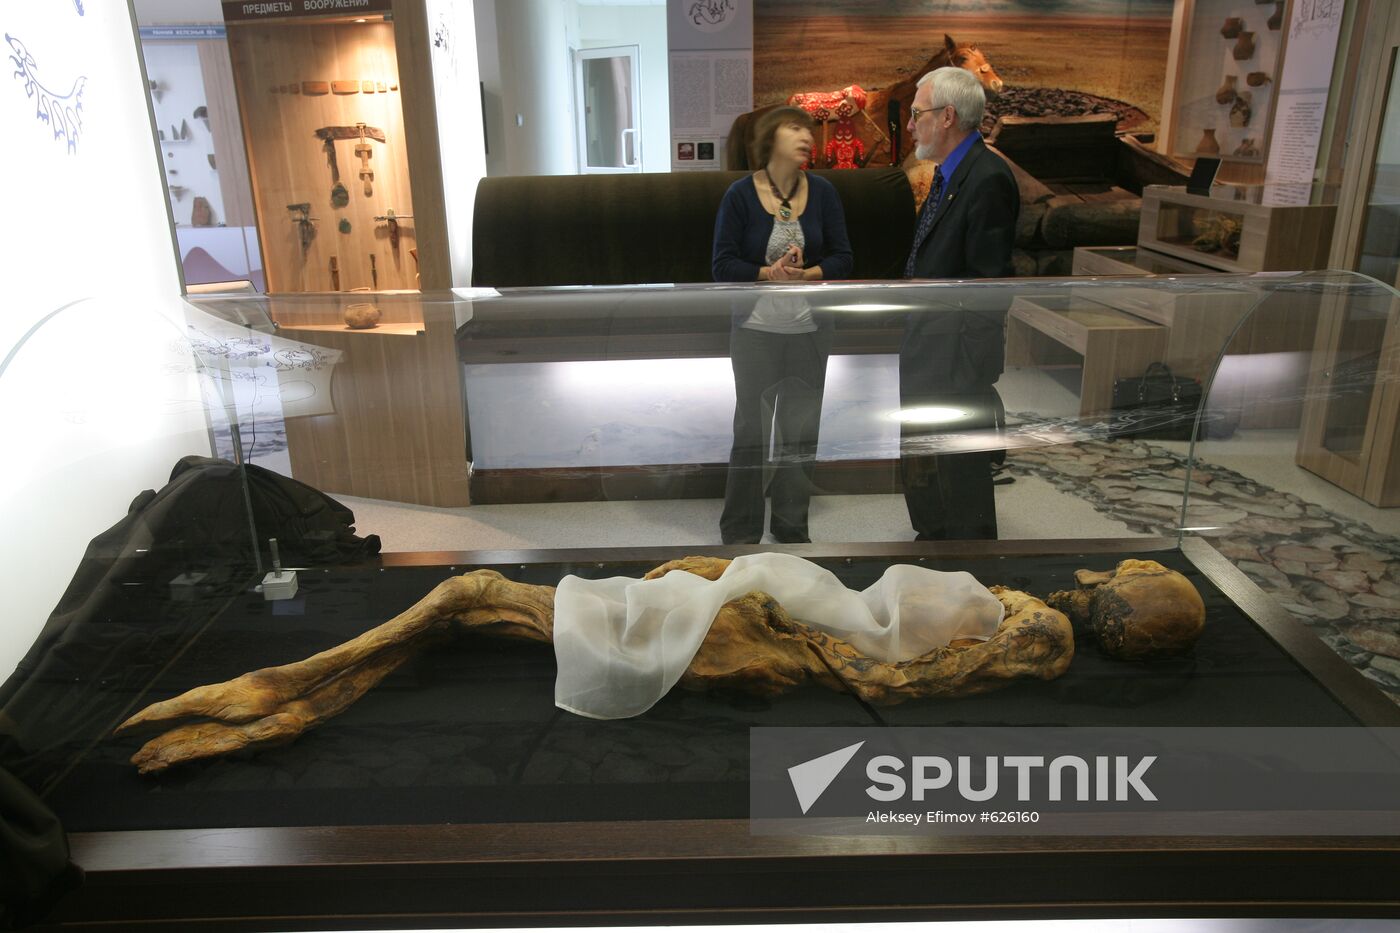 "Altai Princess" mummy